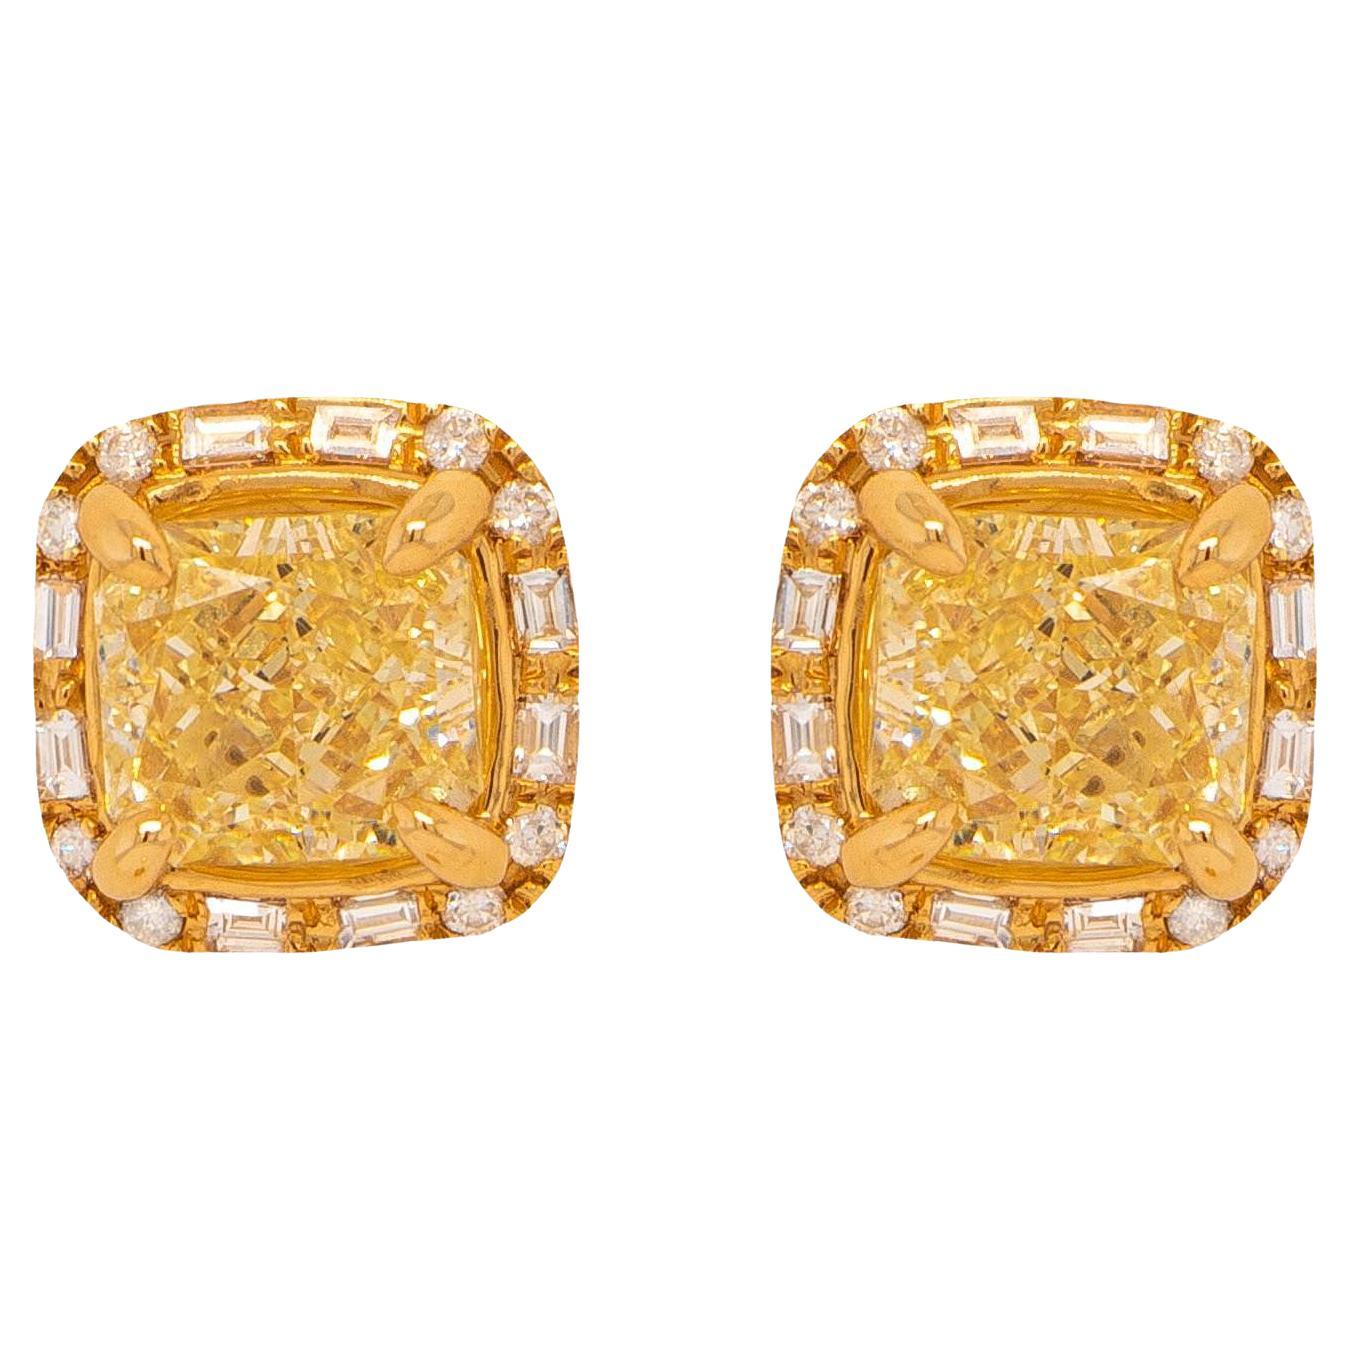 Zwei Original-GIA-Zertifikate sind enthalten
2 GIA-zertifizierte natürliche gelbe Diamanten = 2,02 Karat
(Schliff: Radiant; Farbe: U-V, W-X; Reinheit: VS)
Andere Diamanten = 0,25 Karat
(Schliff: Baguette, Rund; Farbe: G-H, Reinheit: VVS-VS)
Metall: